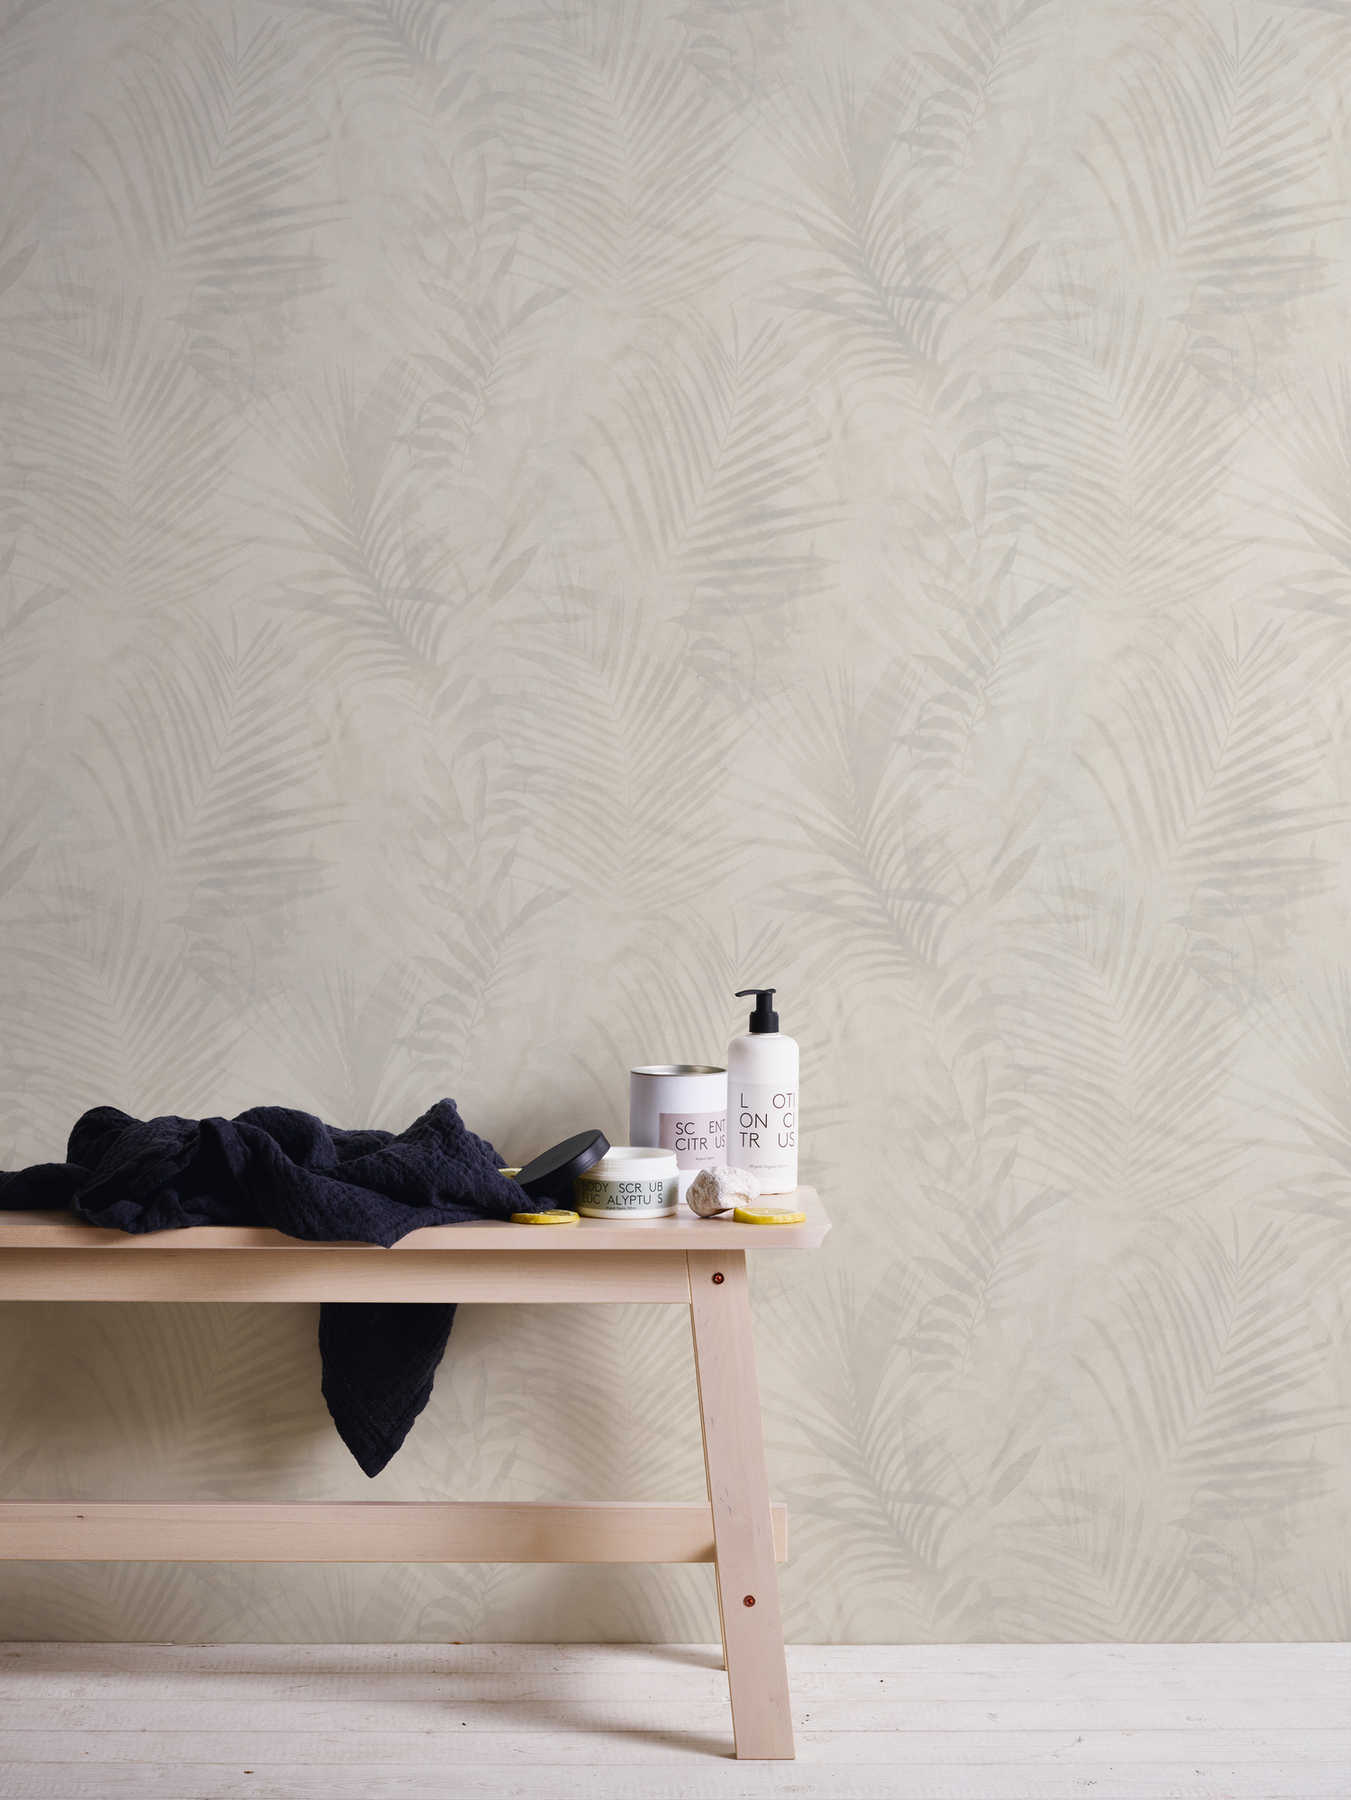             behang palmboom patroon in linnen look - beige, crème, grijs
        